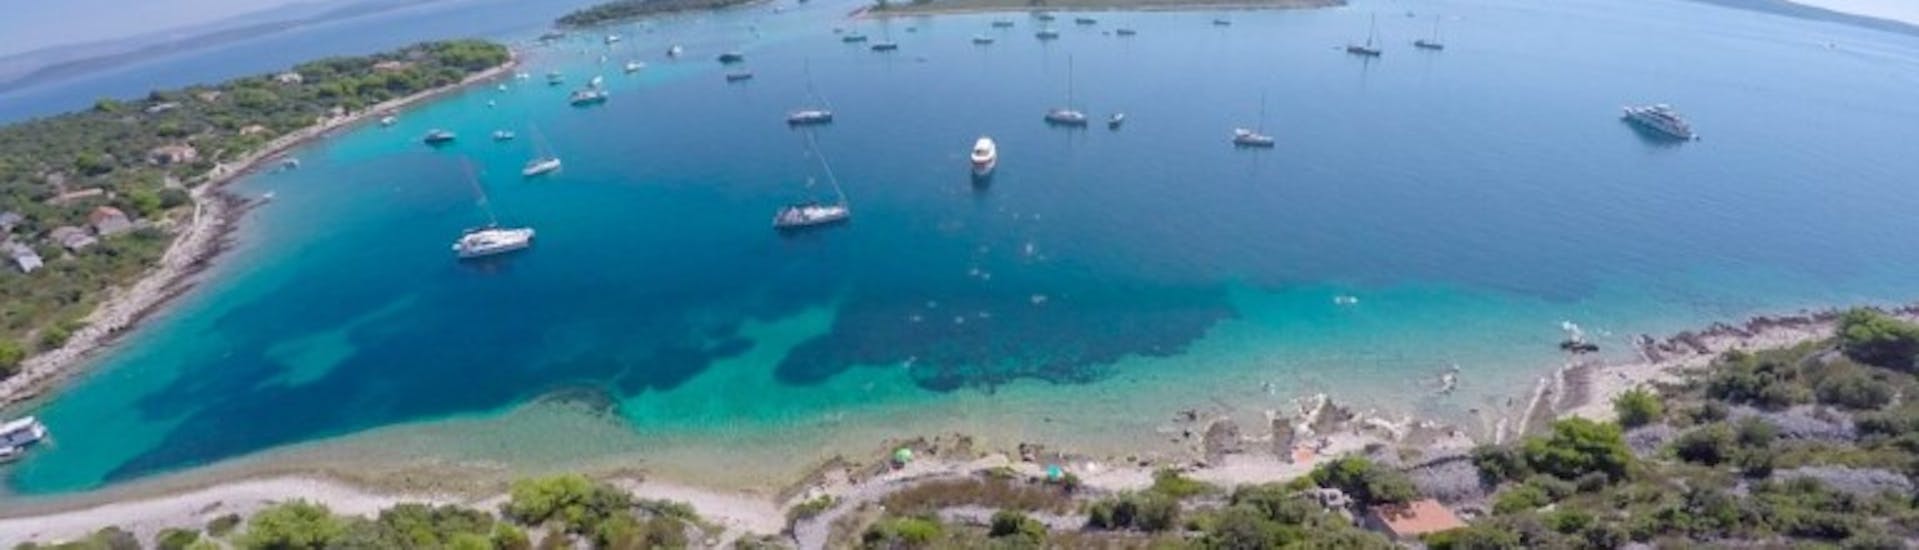 Bootstour zum Schiffwrack und der Blauen Lagune ab Trogir.